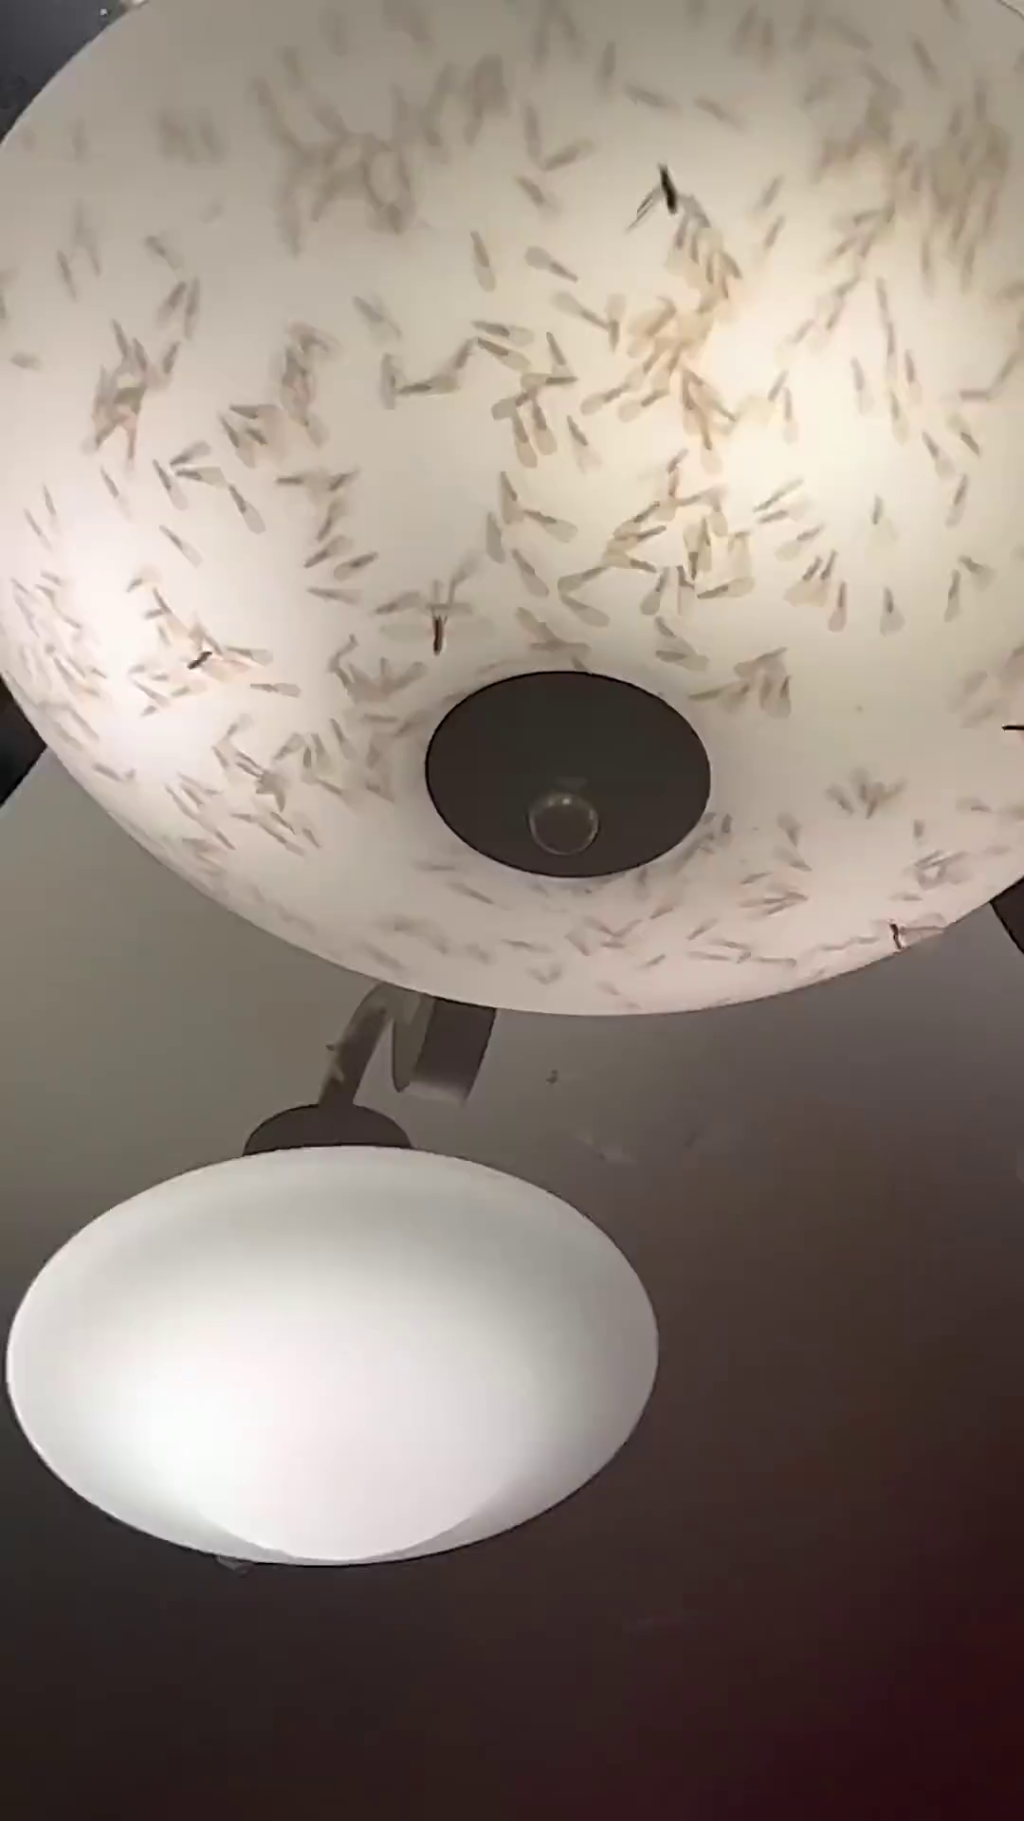 有網民分享家中燈具上佈滿了白蟻。網片截圖